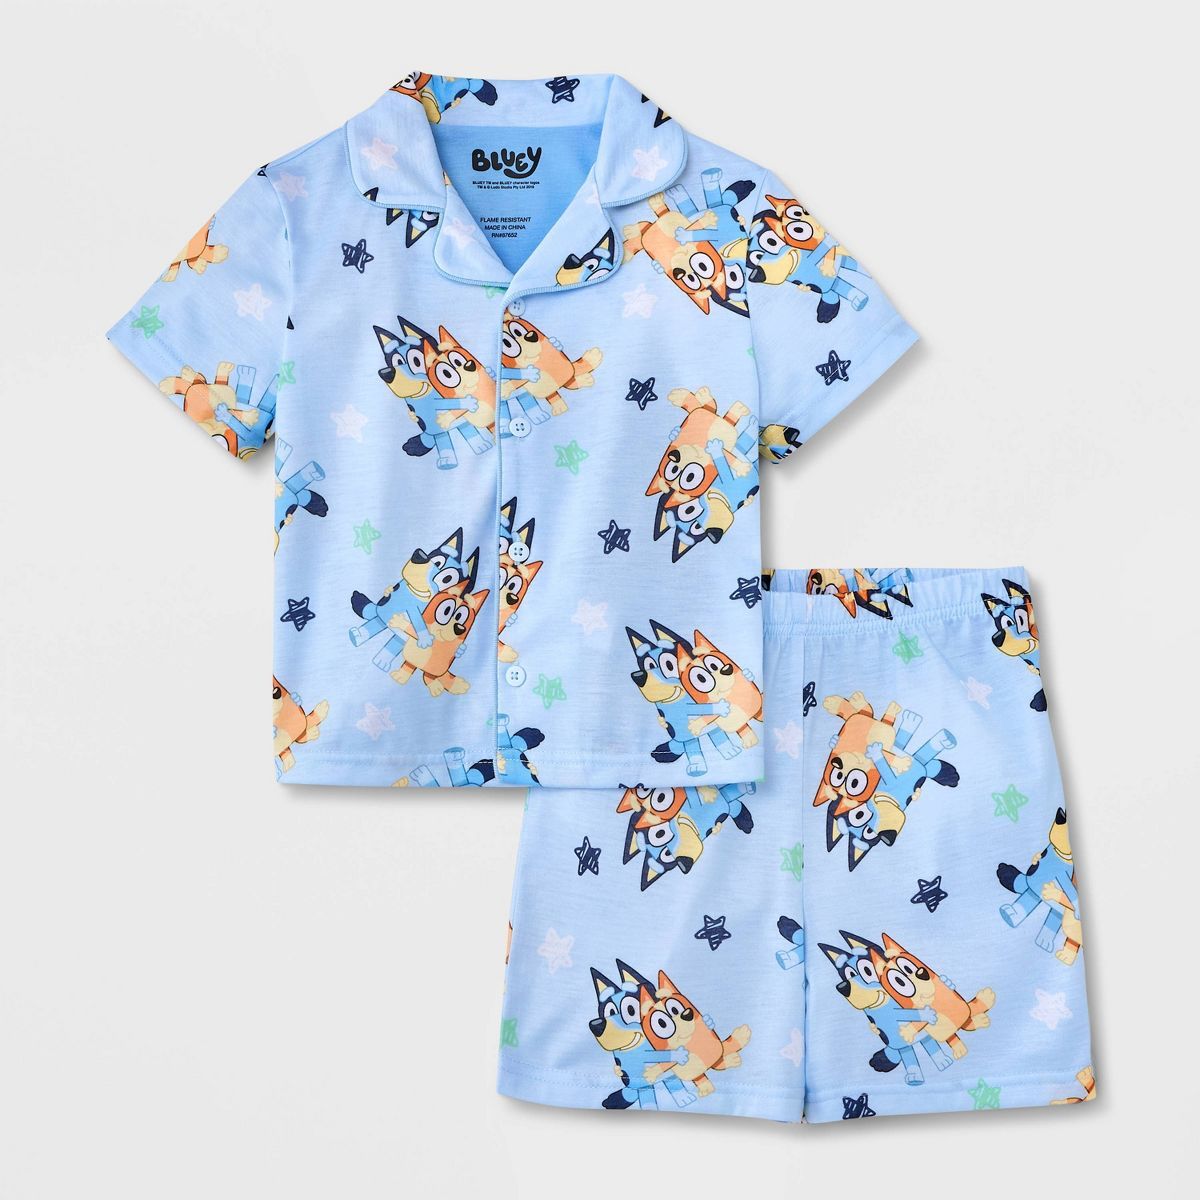 Toddler Boys' 2pc Bluey Pajama Set - Blue | Target